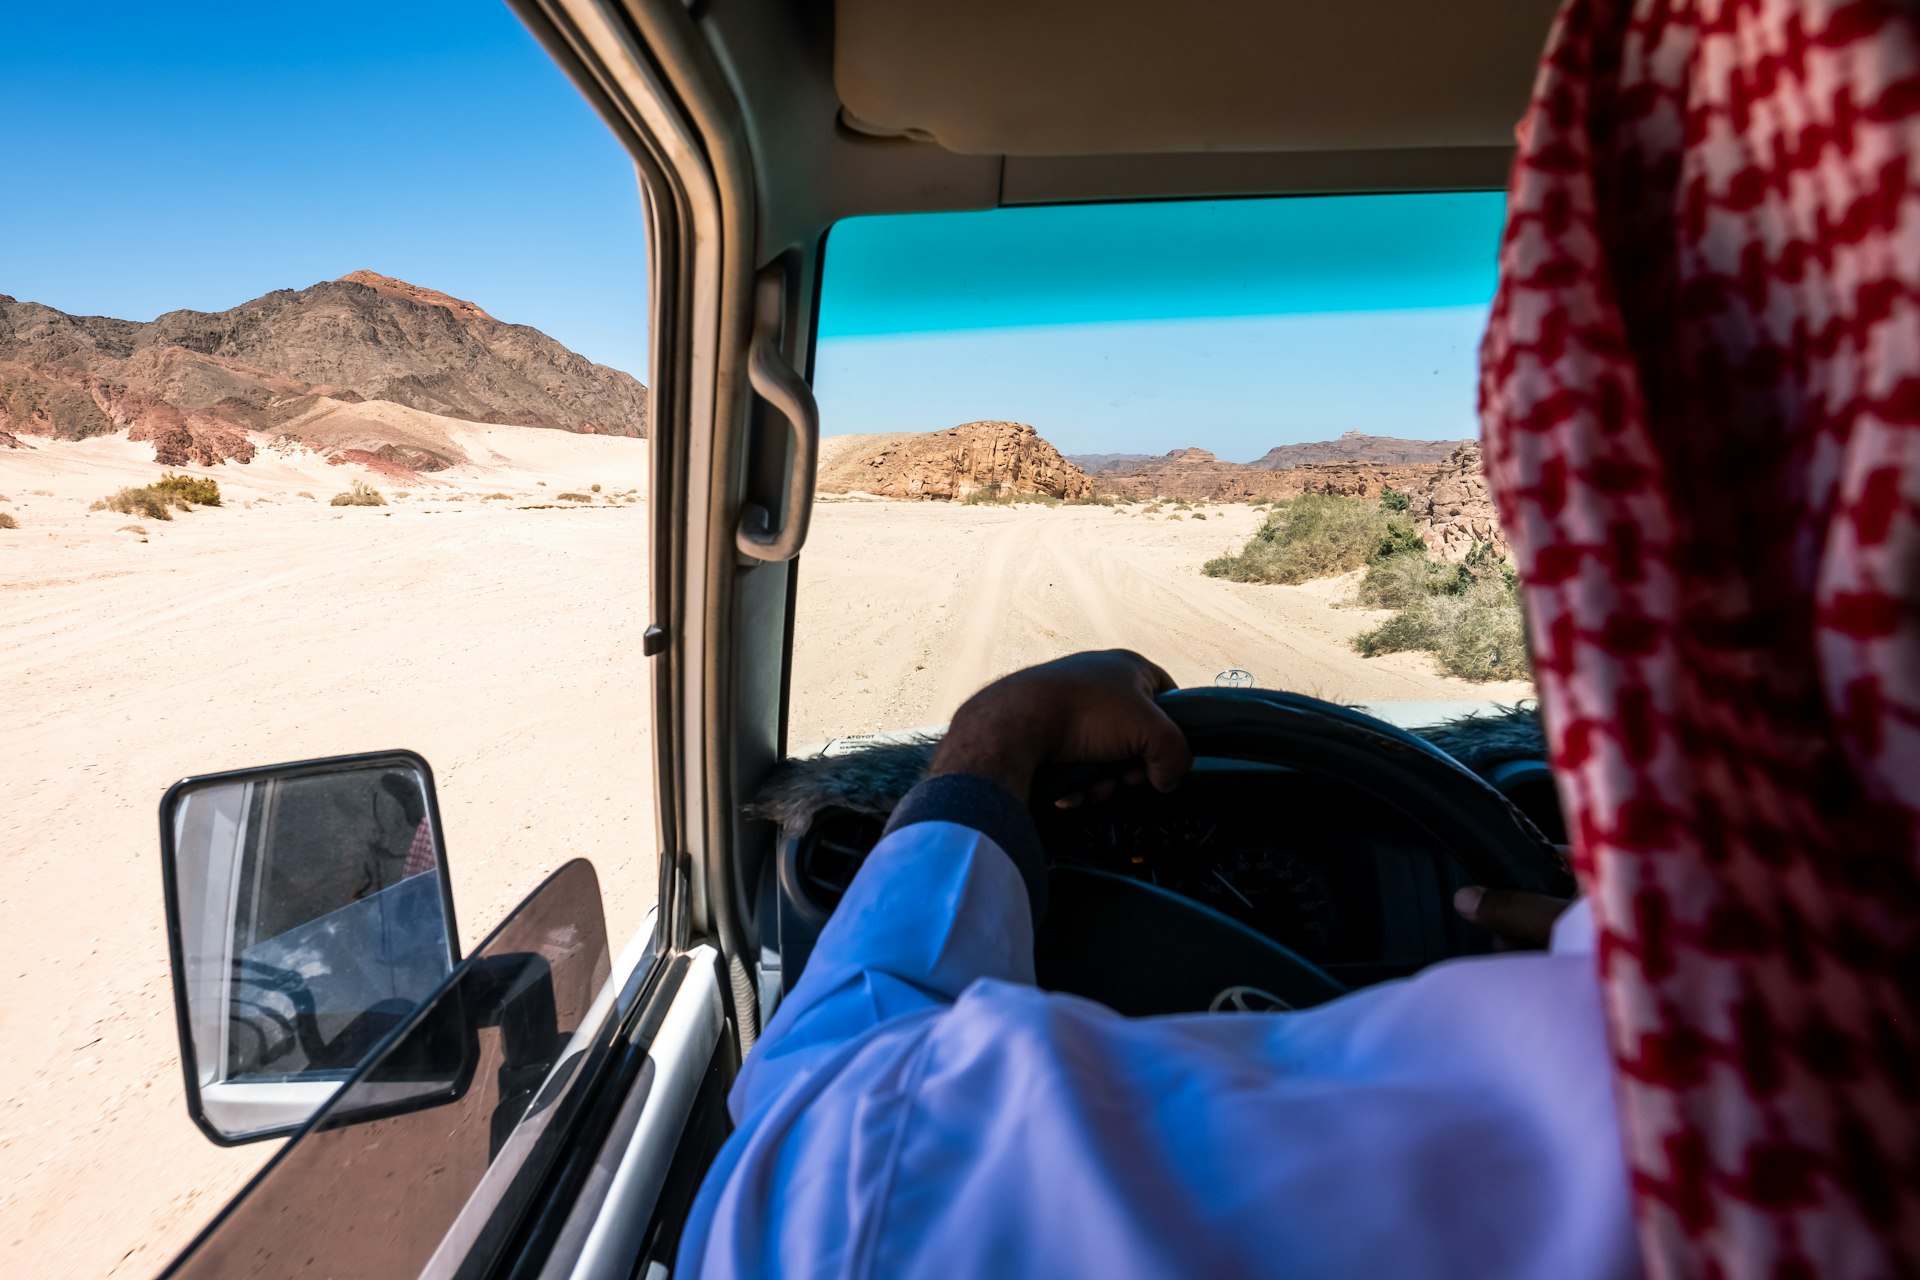 A man drives a car through the desert